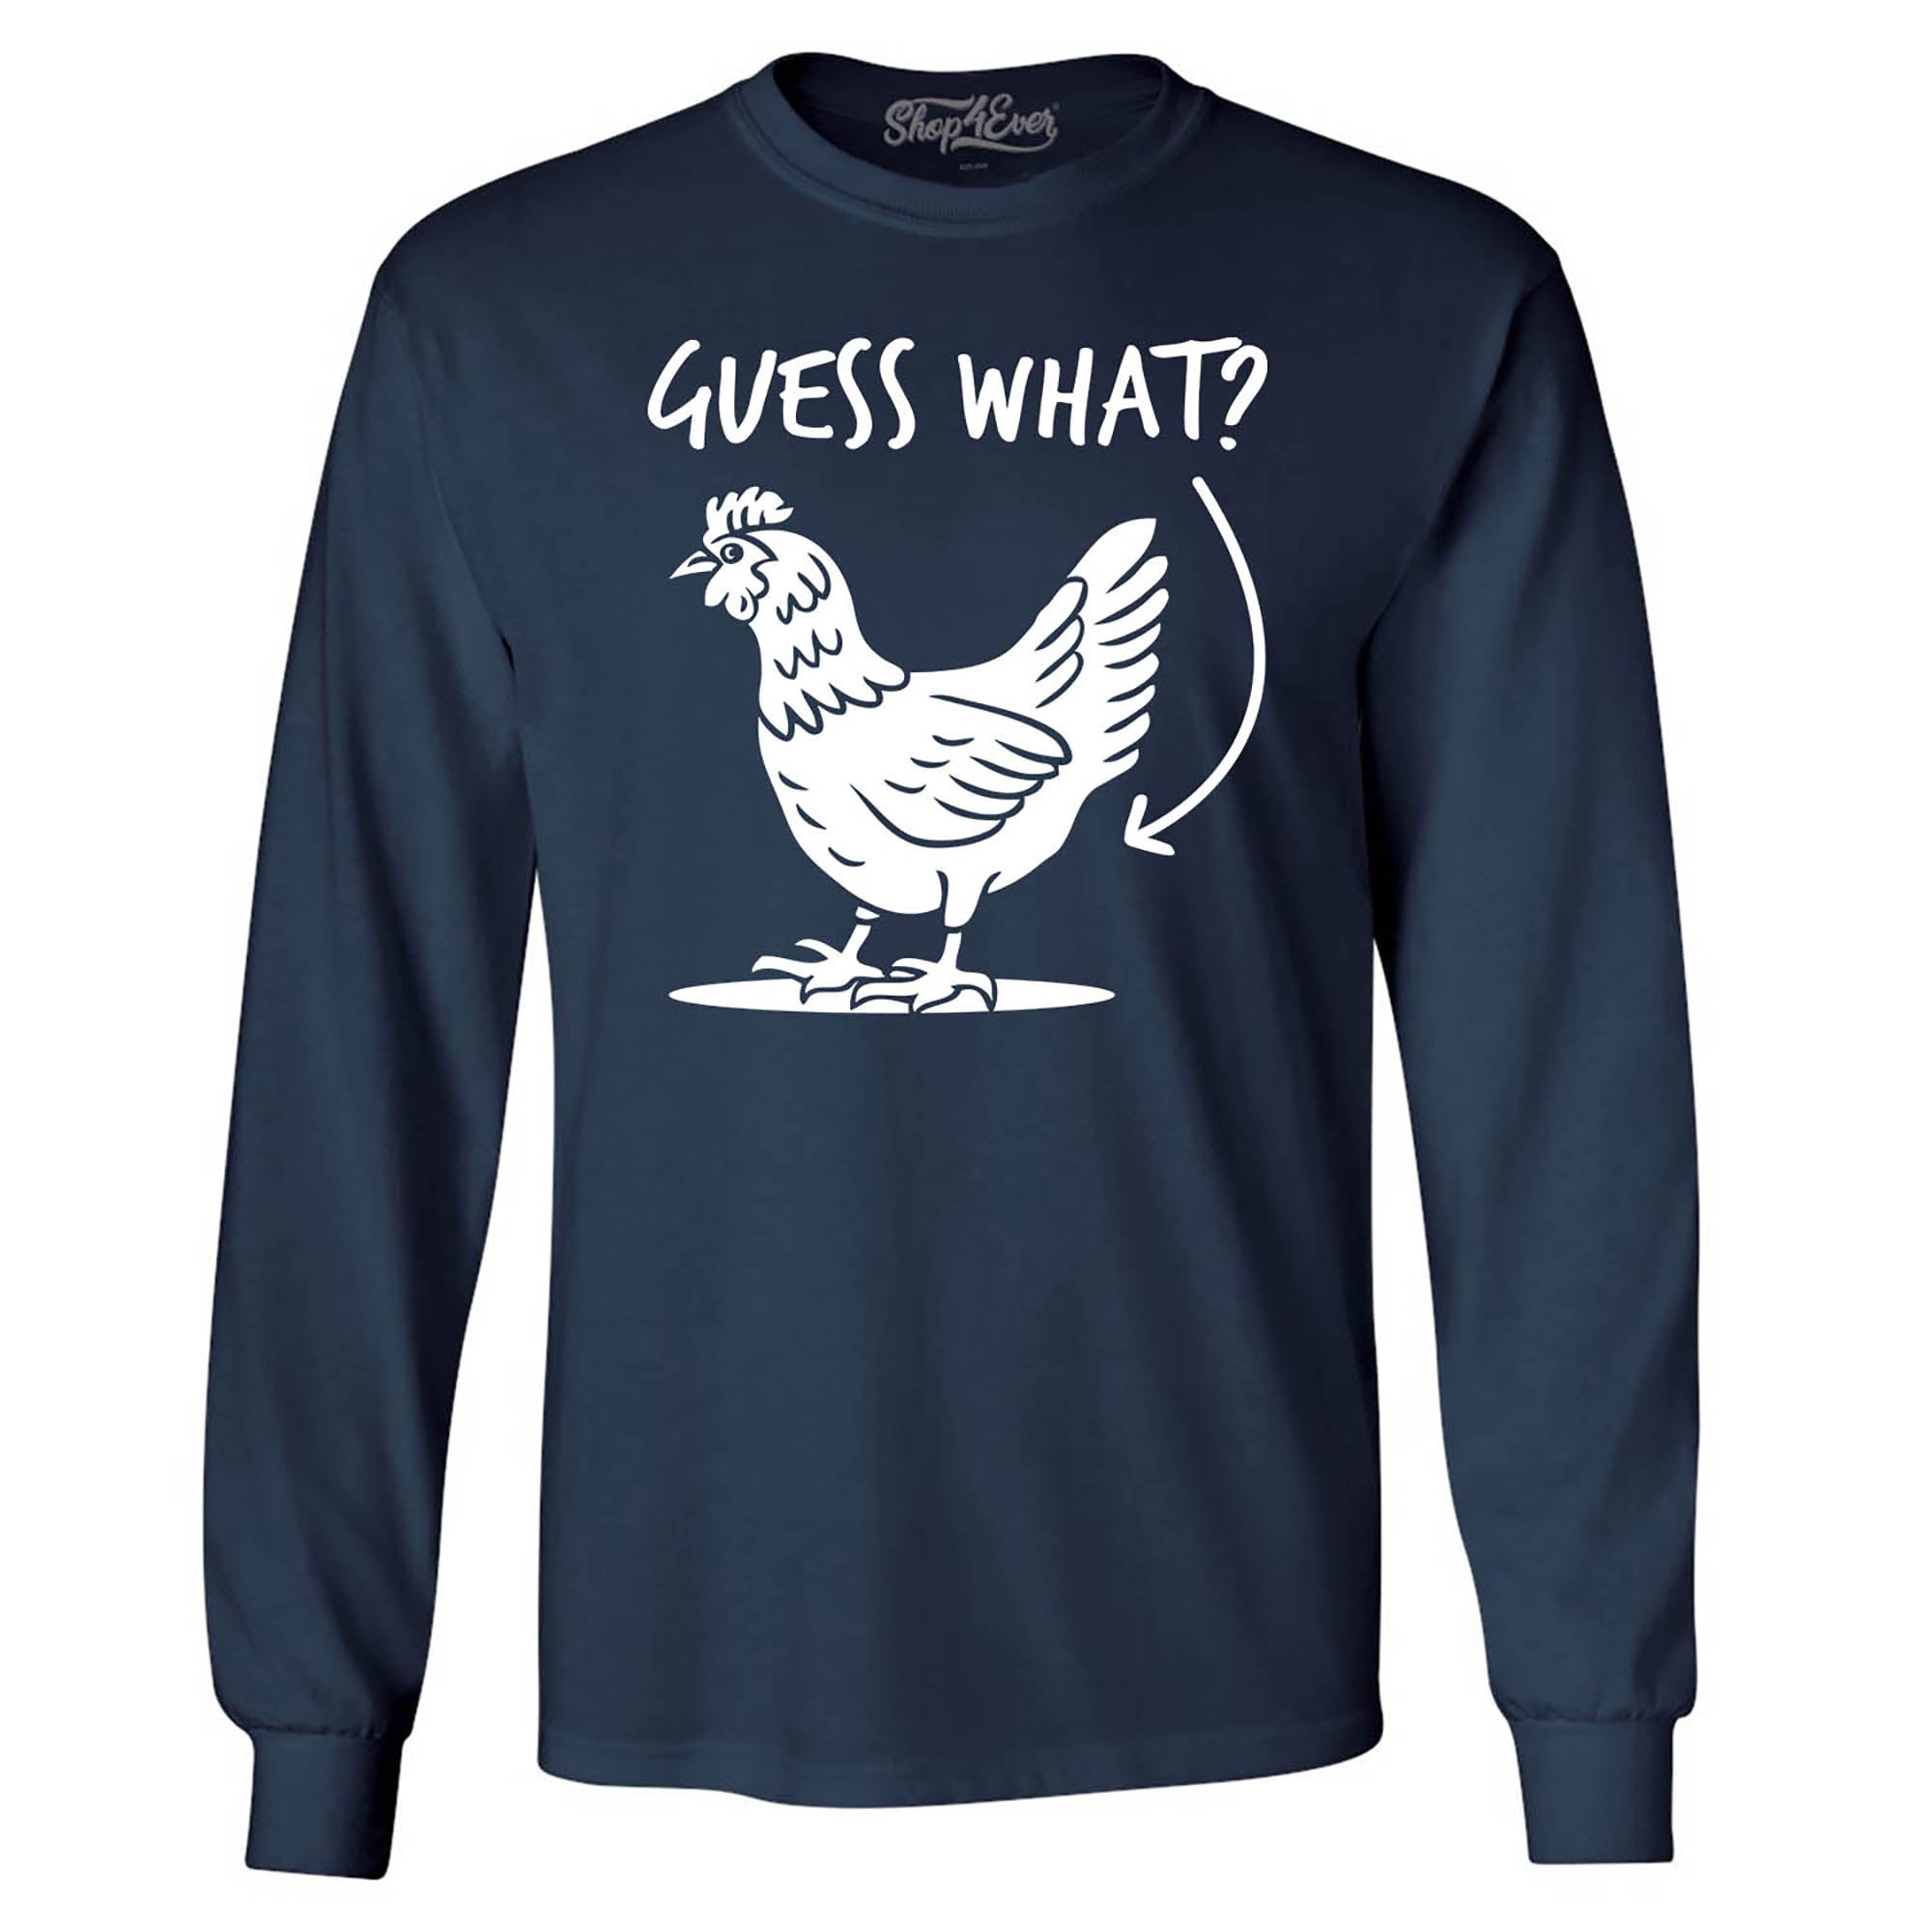 Guess What? Chicken Butt Long Sleeve Shirt